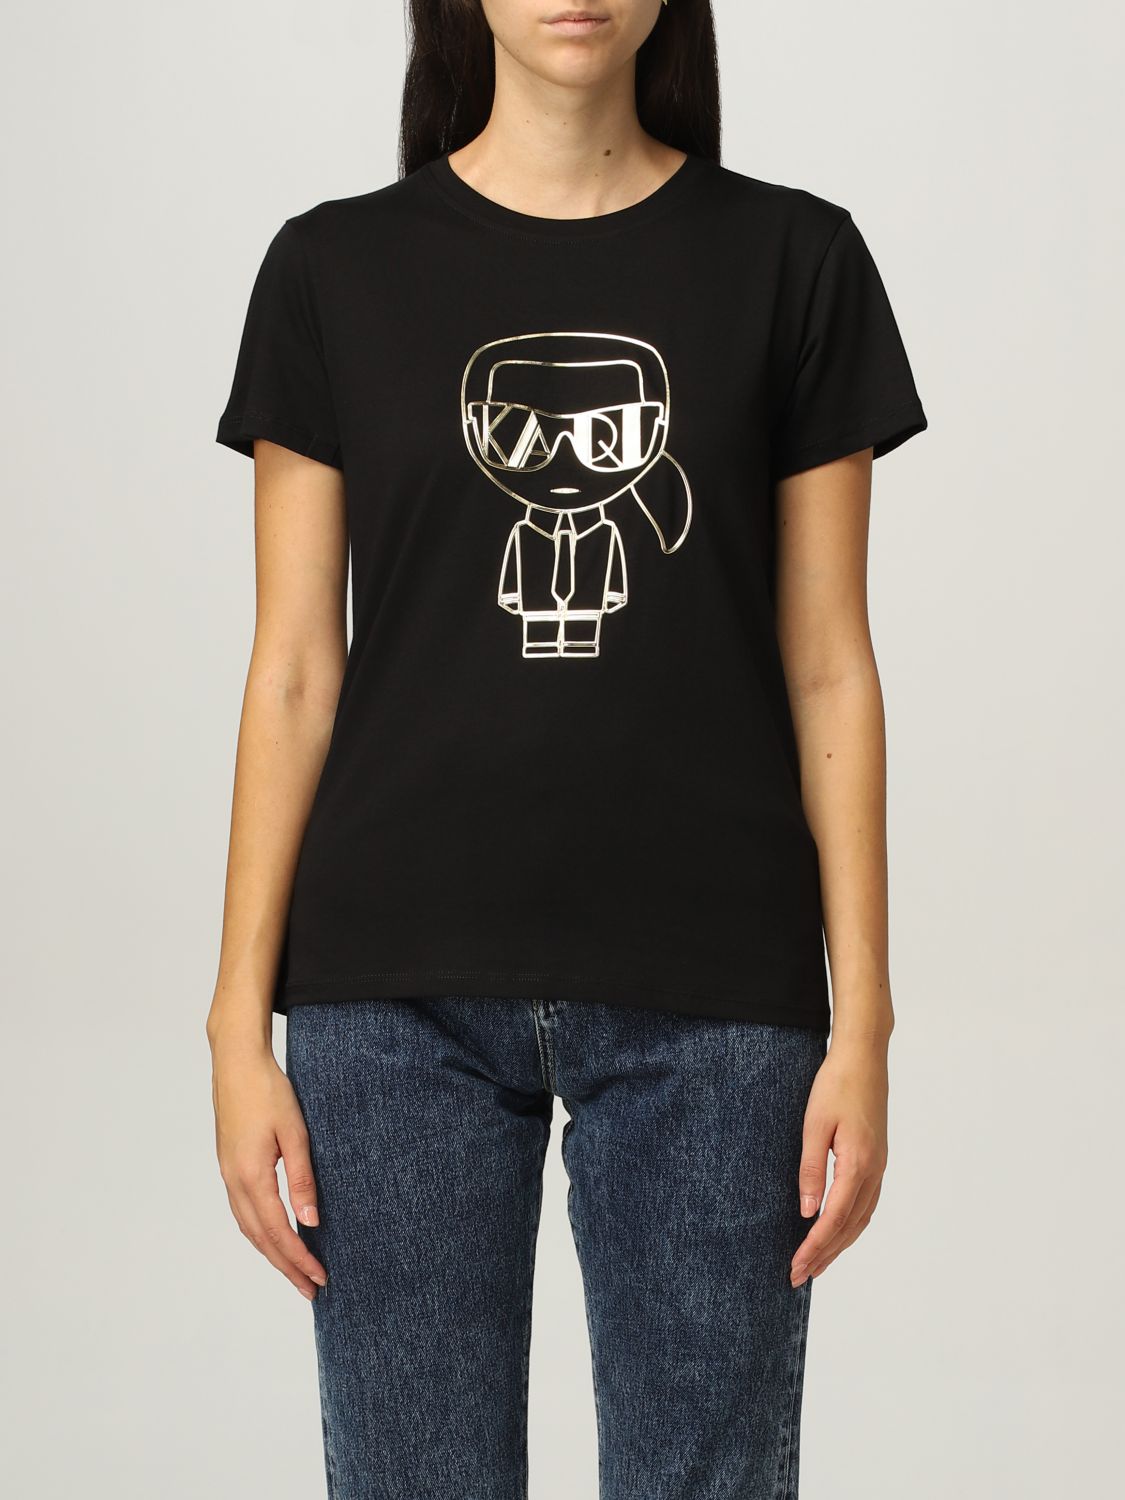 KARL LAGERFELD: Camiseta para mujer, Negro Karl Lagerfeld 216W1705 en línea en GIGLIO.COM